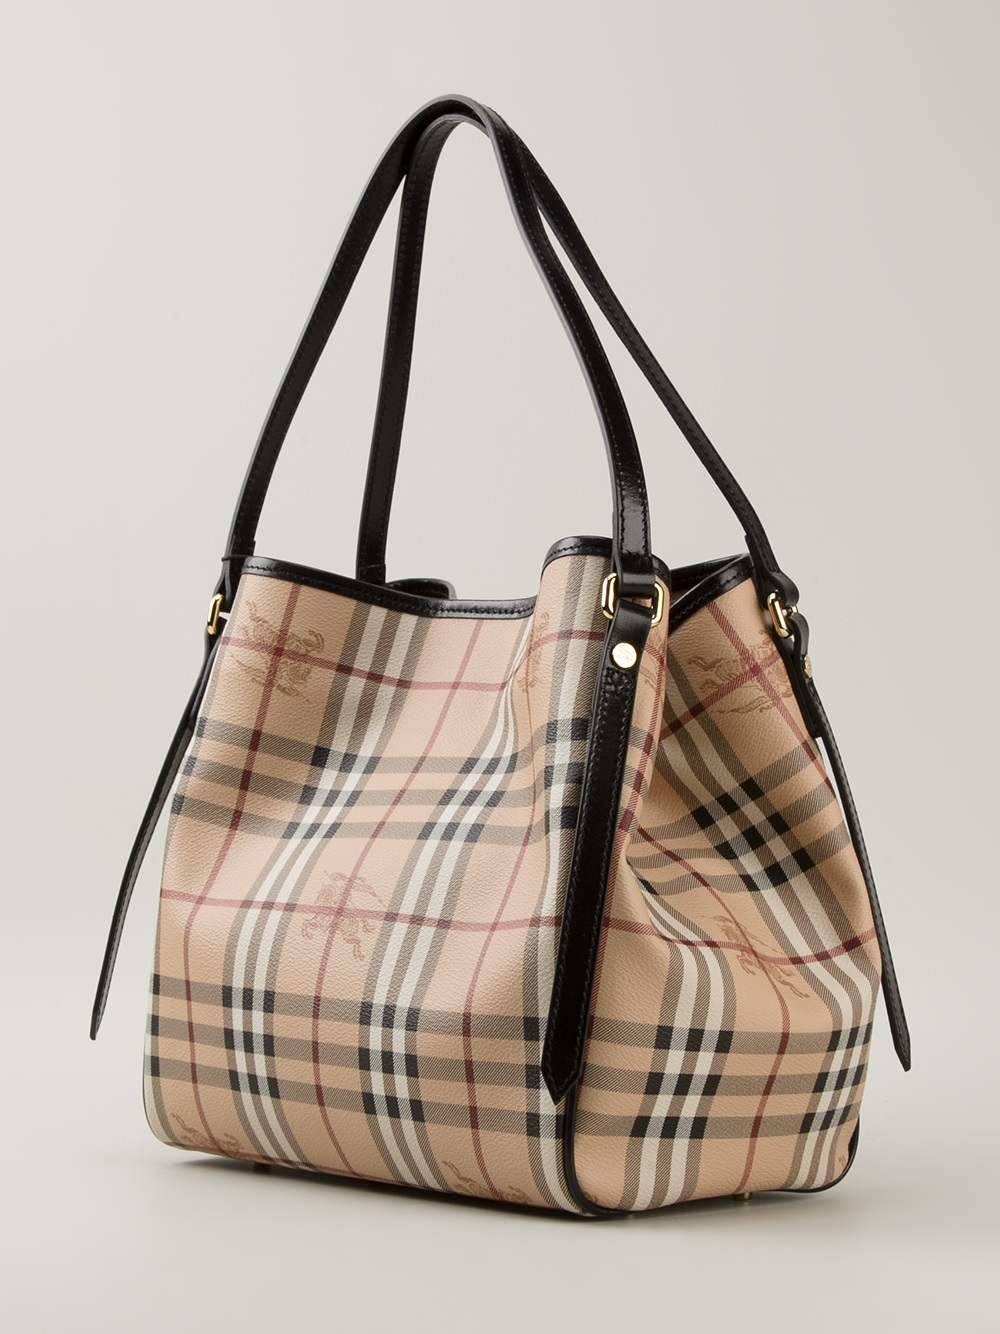 Images Of Burberry Handbags | semashow.com